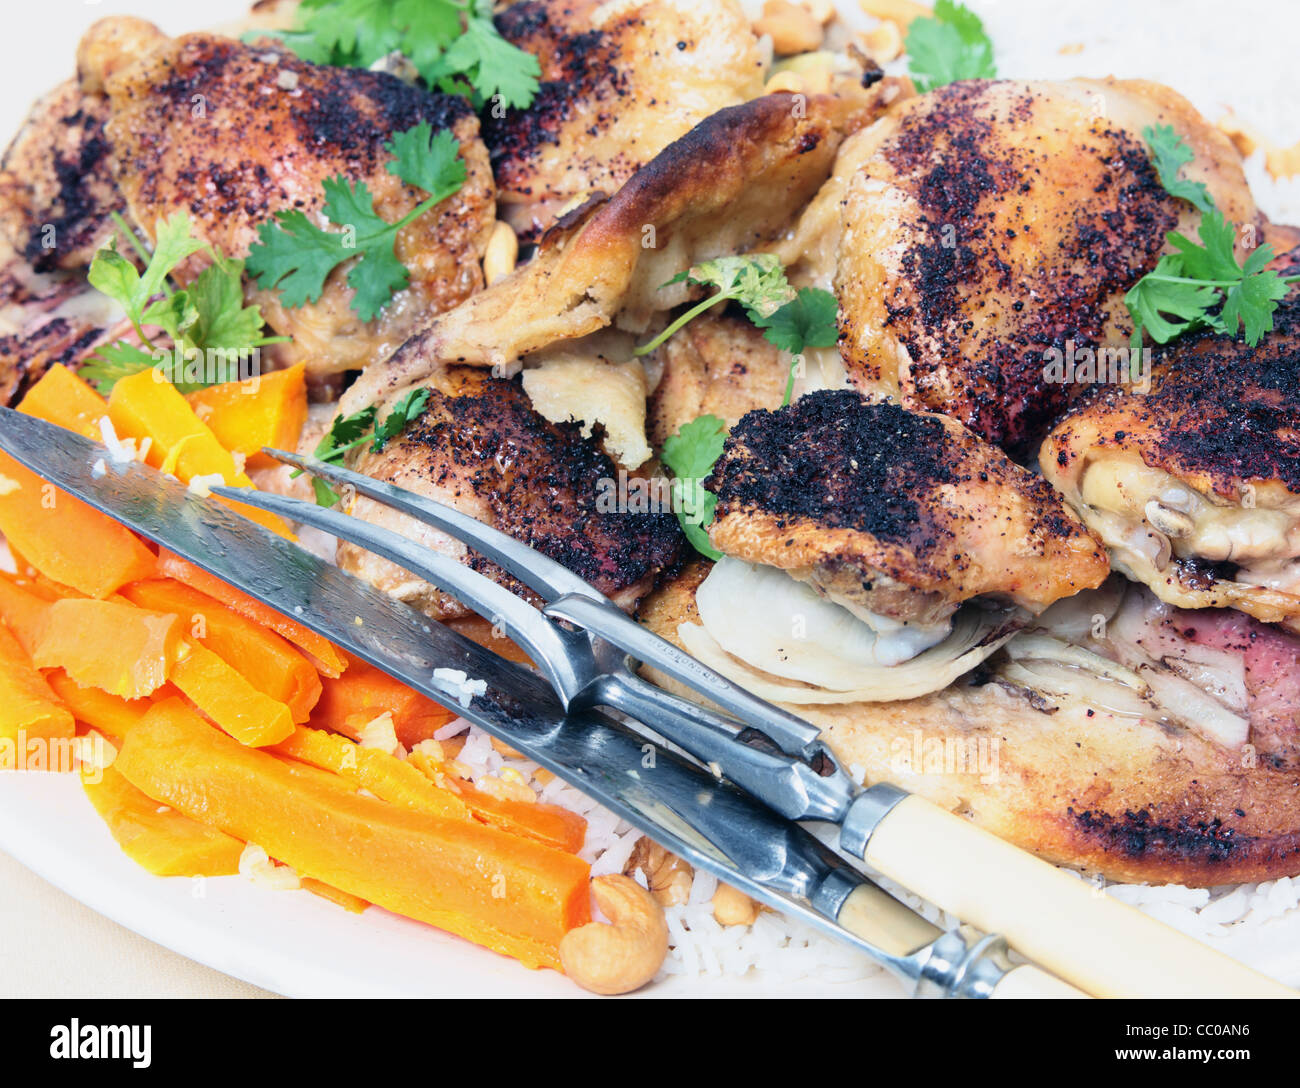 Plateau de sumac libanais, cuisses de poulet cuit sur pain plat et servi sur un lit de riz aux noix, garnir de coriandre Banque D'Images